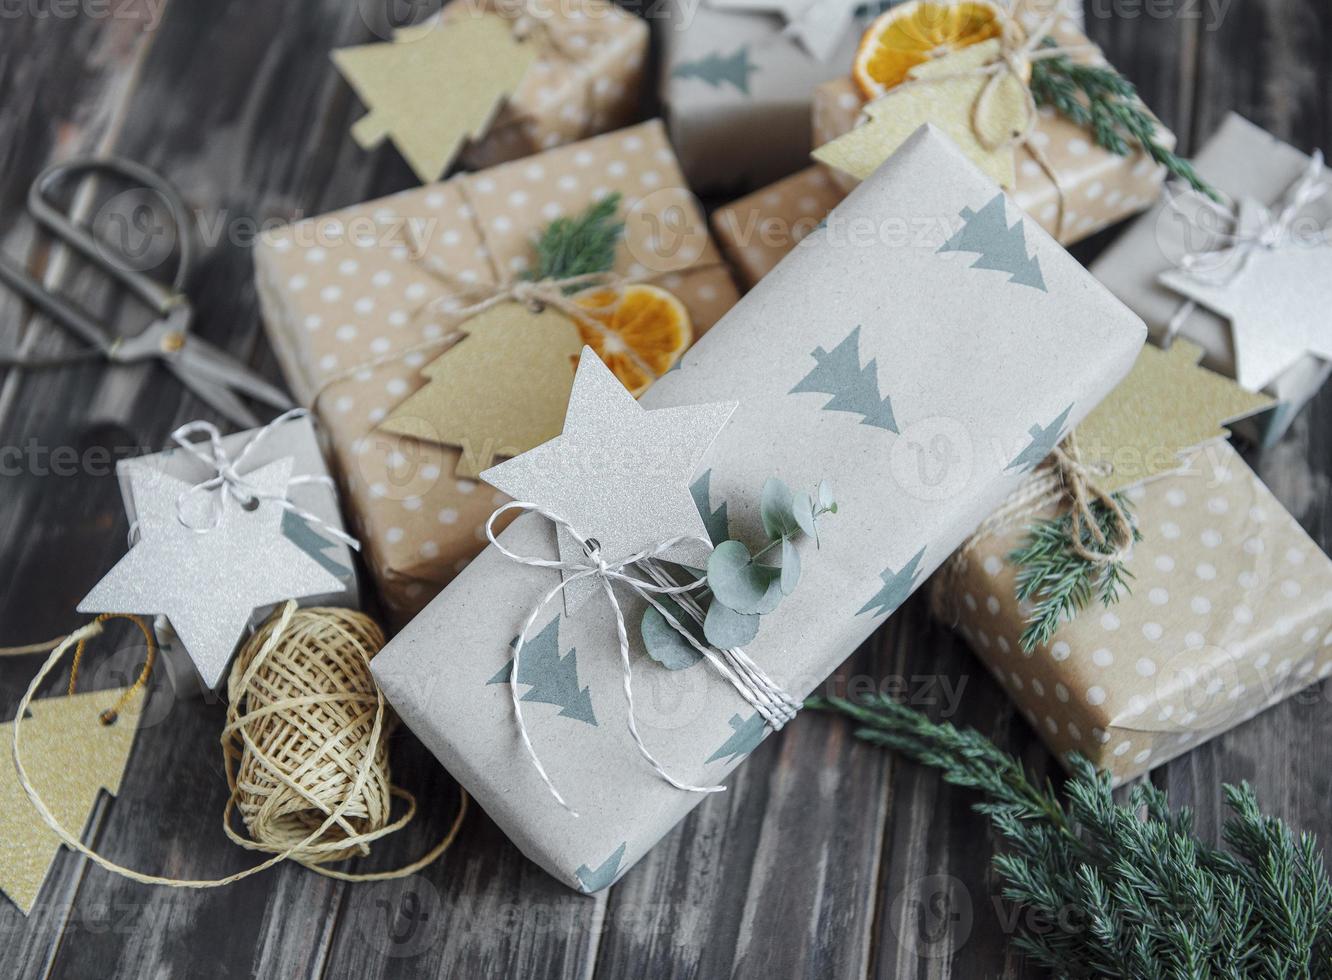 caja de regalo casera decorativa navideña envuelta en papel kraft marrón foto